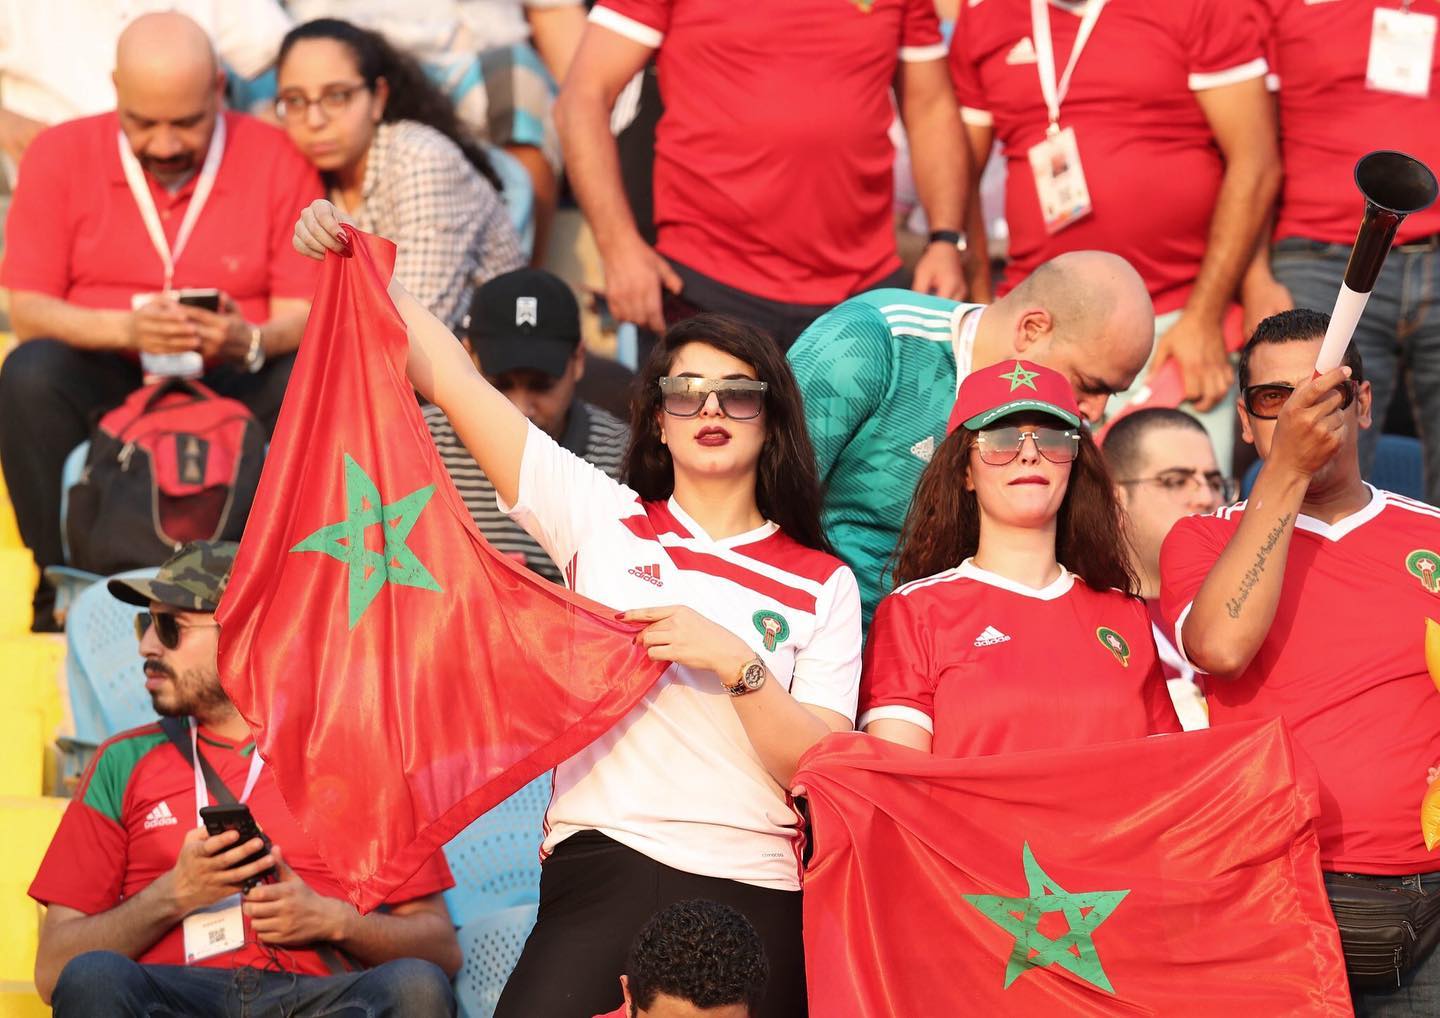 اليازغي: عودة الجماهير دليل على نجاح المغرب في تدبير الأزمة الصحية